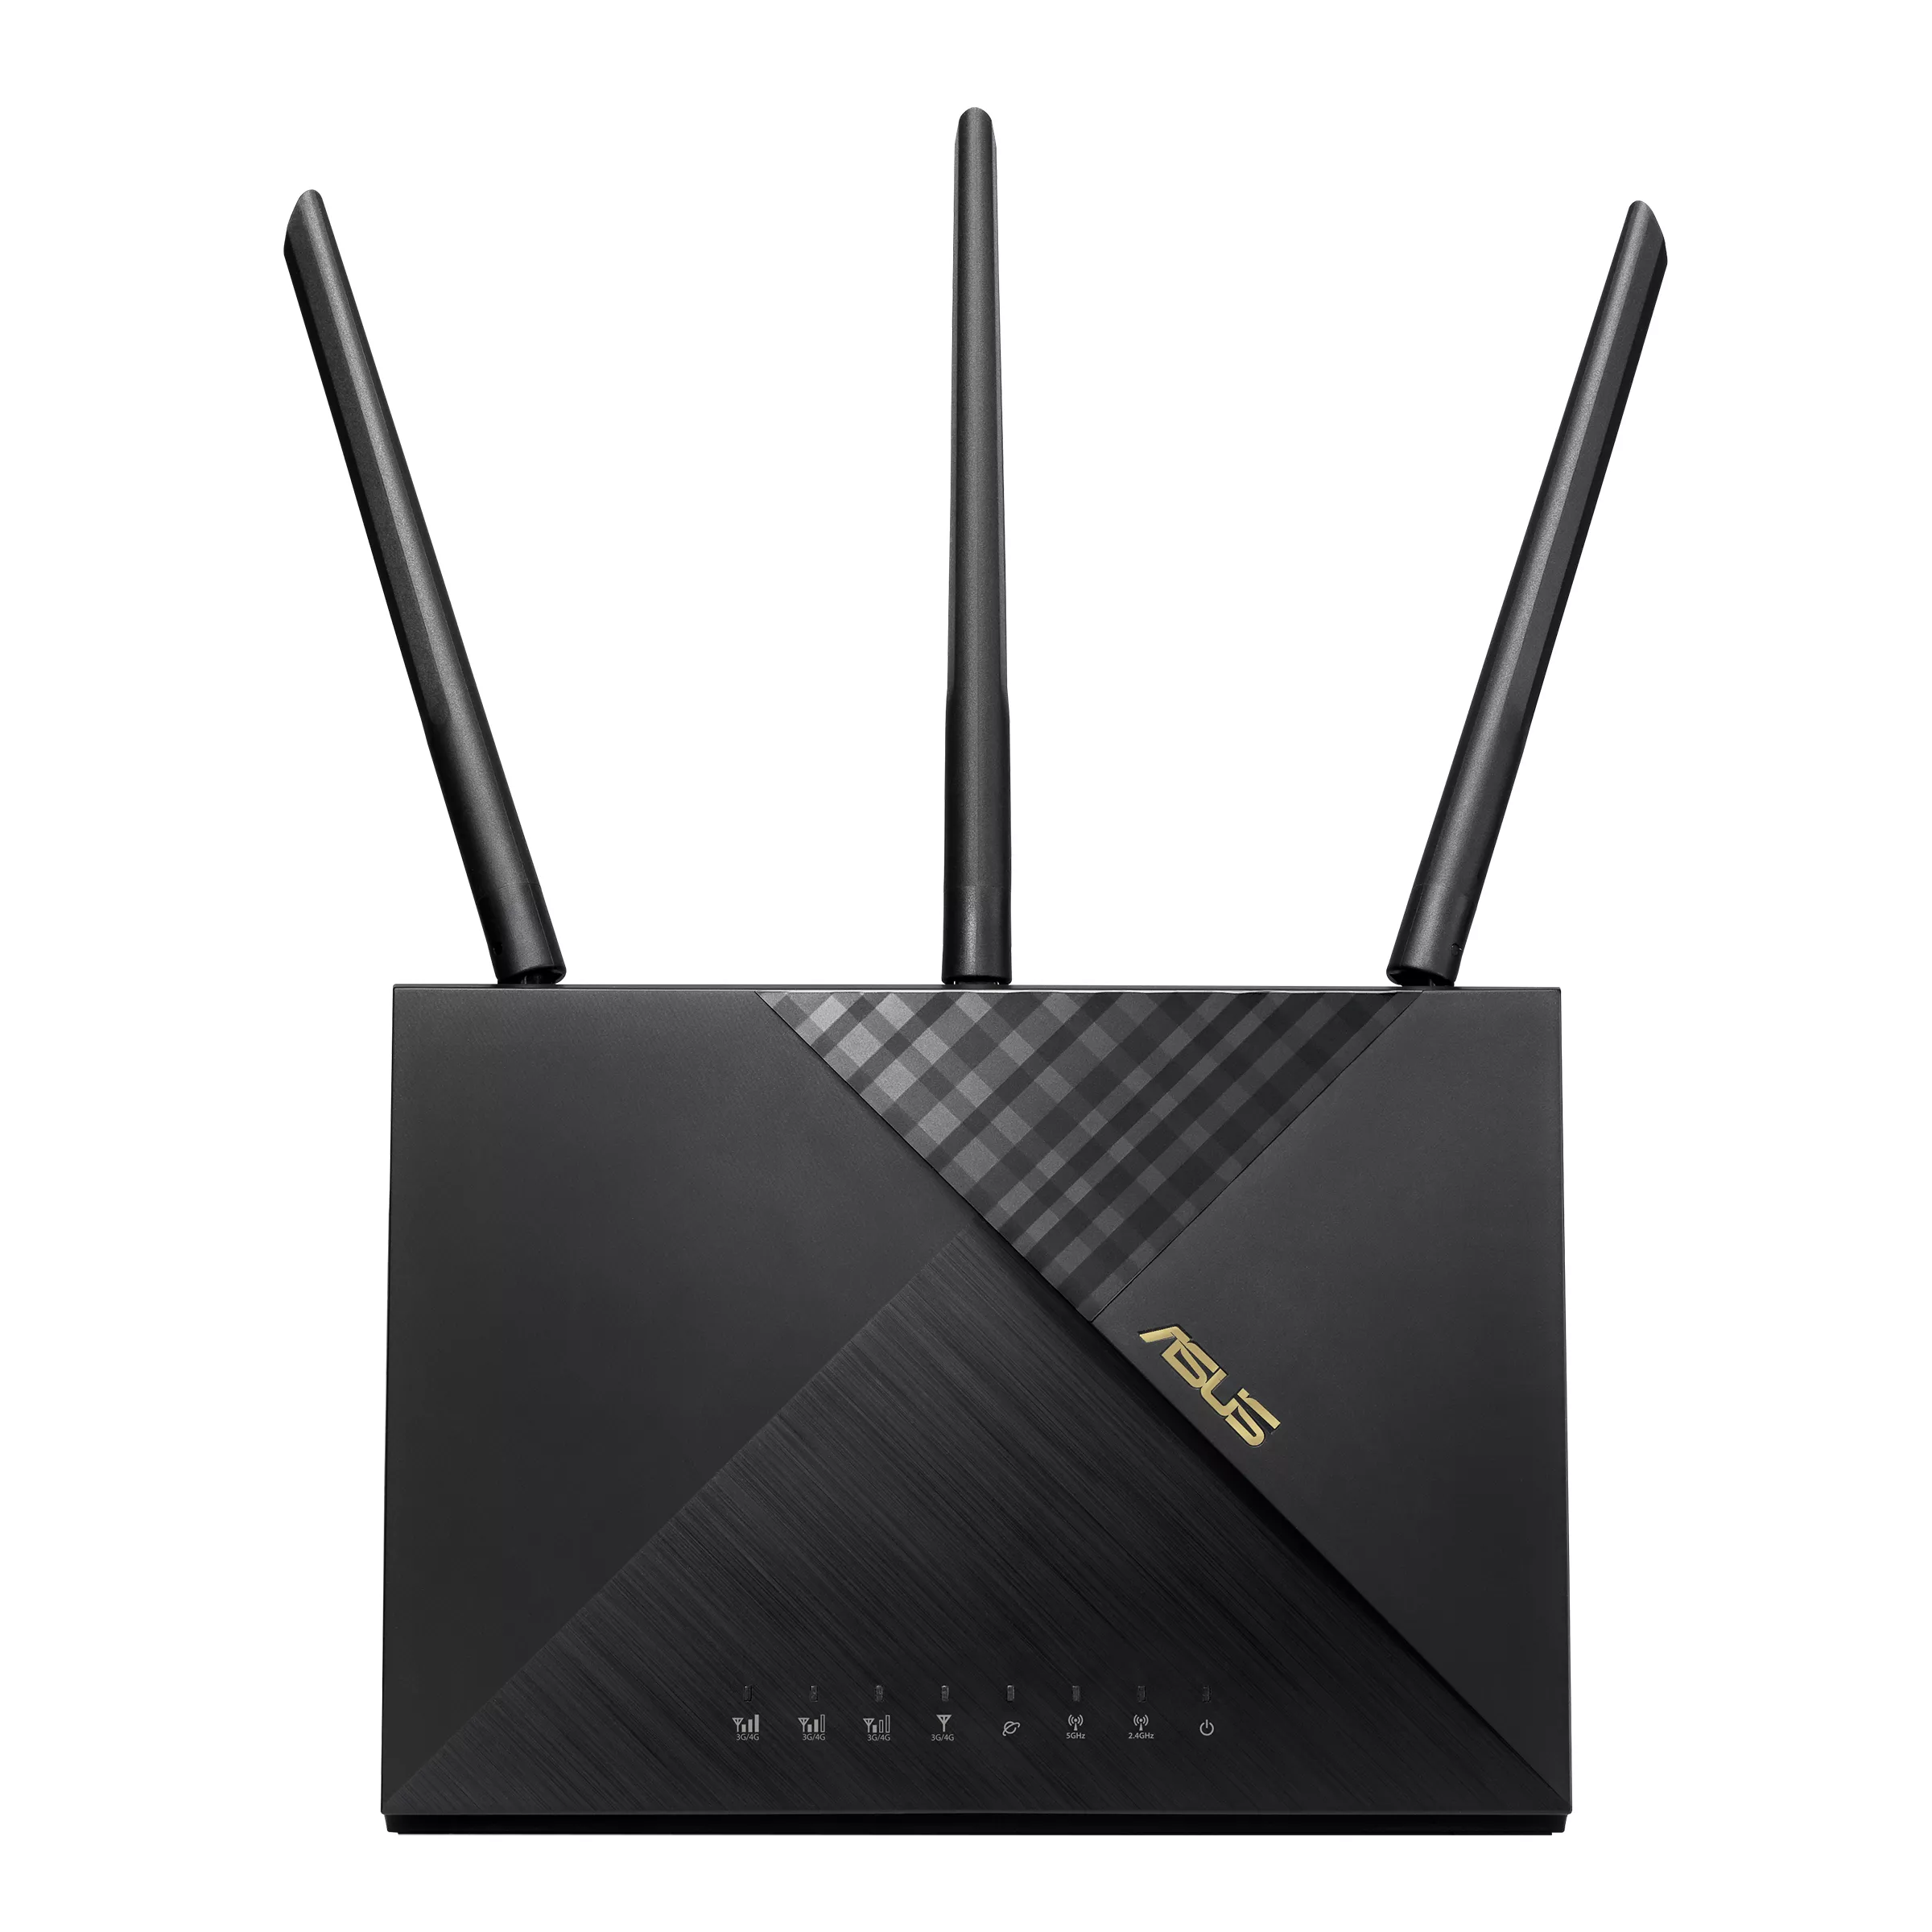 Vente ASUS Wireless-AX1800 Dual-band LTE Modem Router ASUS au meilleur prix - visuel 4